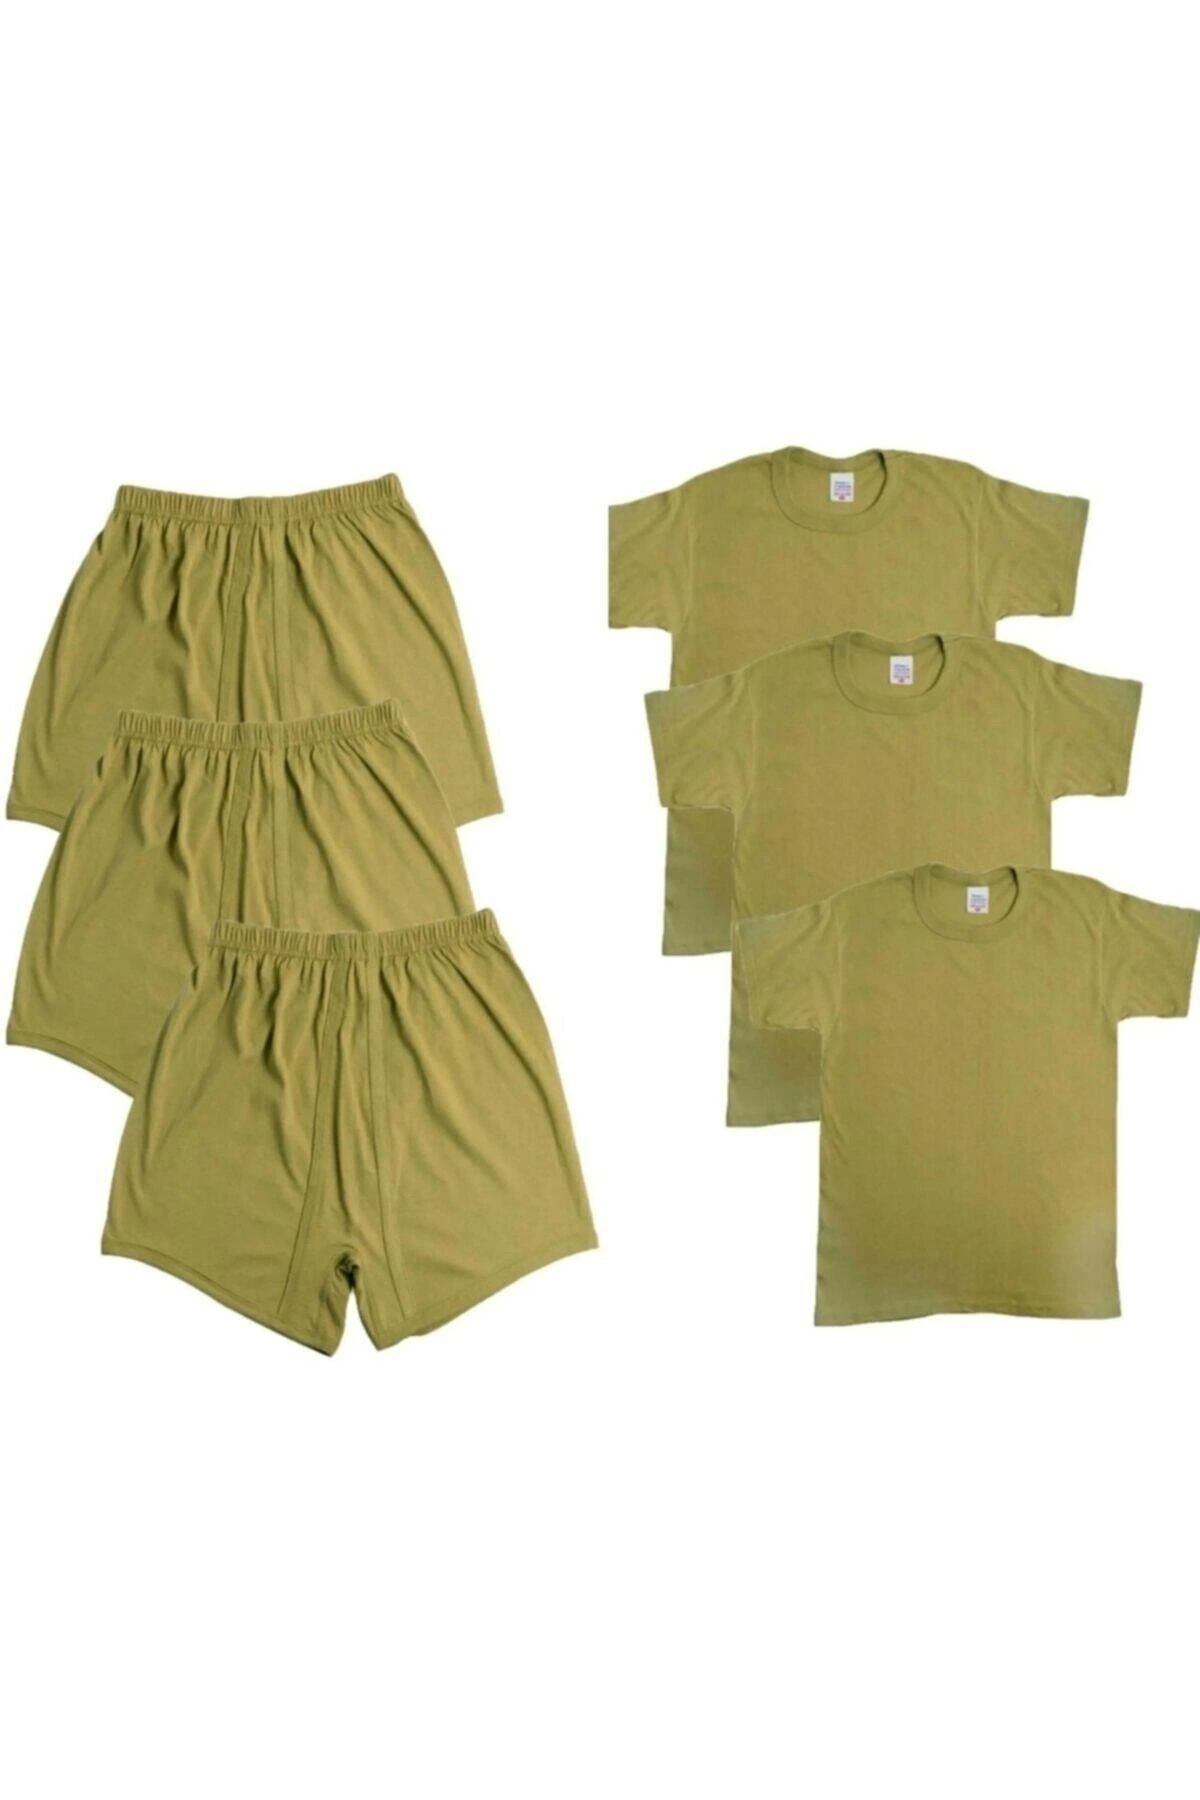 ERDOĞANLAR 3'lü Asker Iç Çamaşırı Boxer Fanila - Askerlik Malzemeleri Acemi ve Bedelli Malzemesi Seti